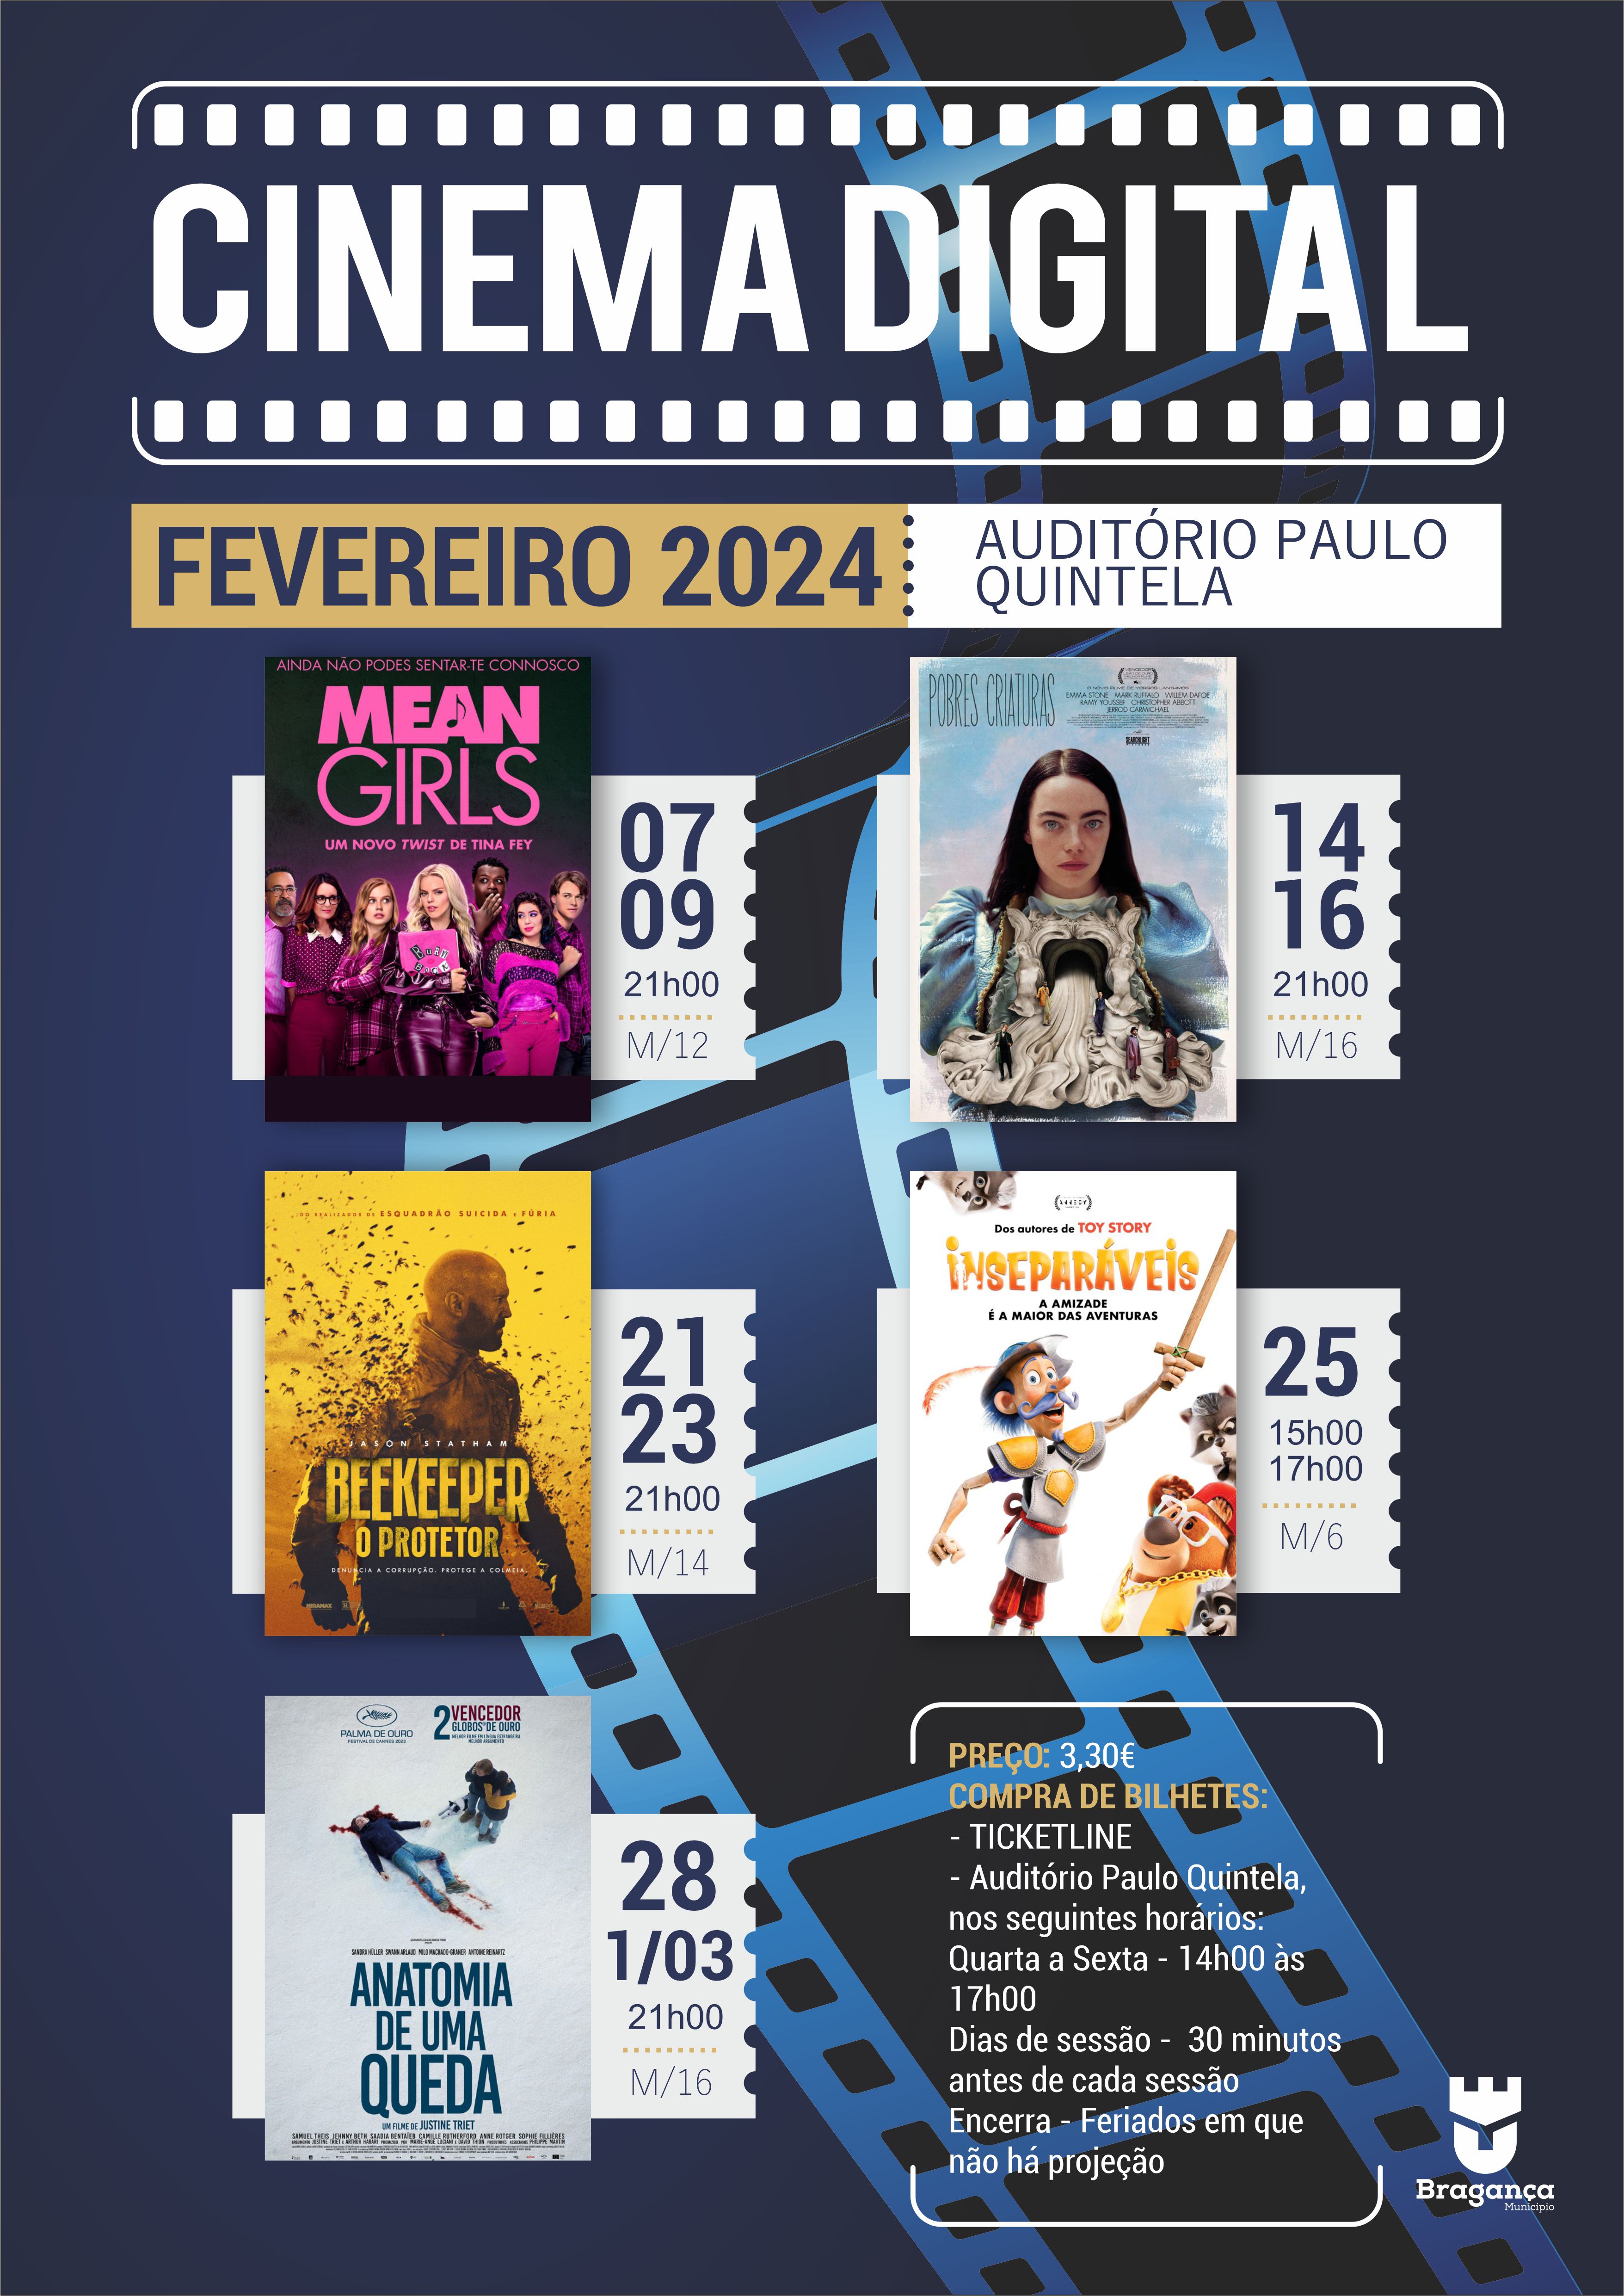 Cinema Digital - Fevereiro 2024 - CM Bragança